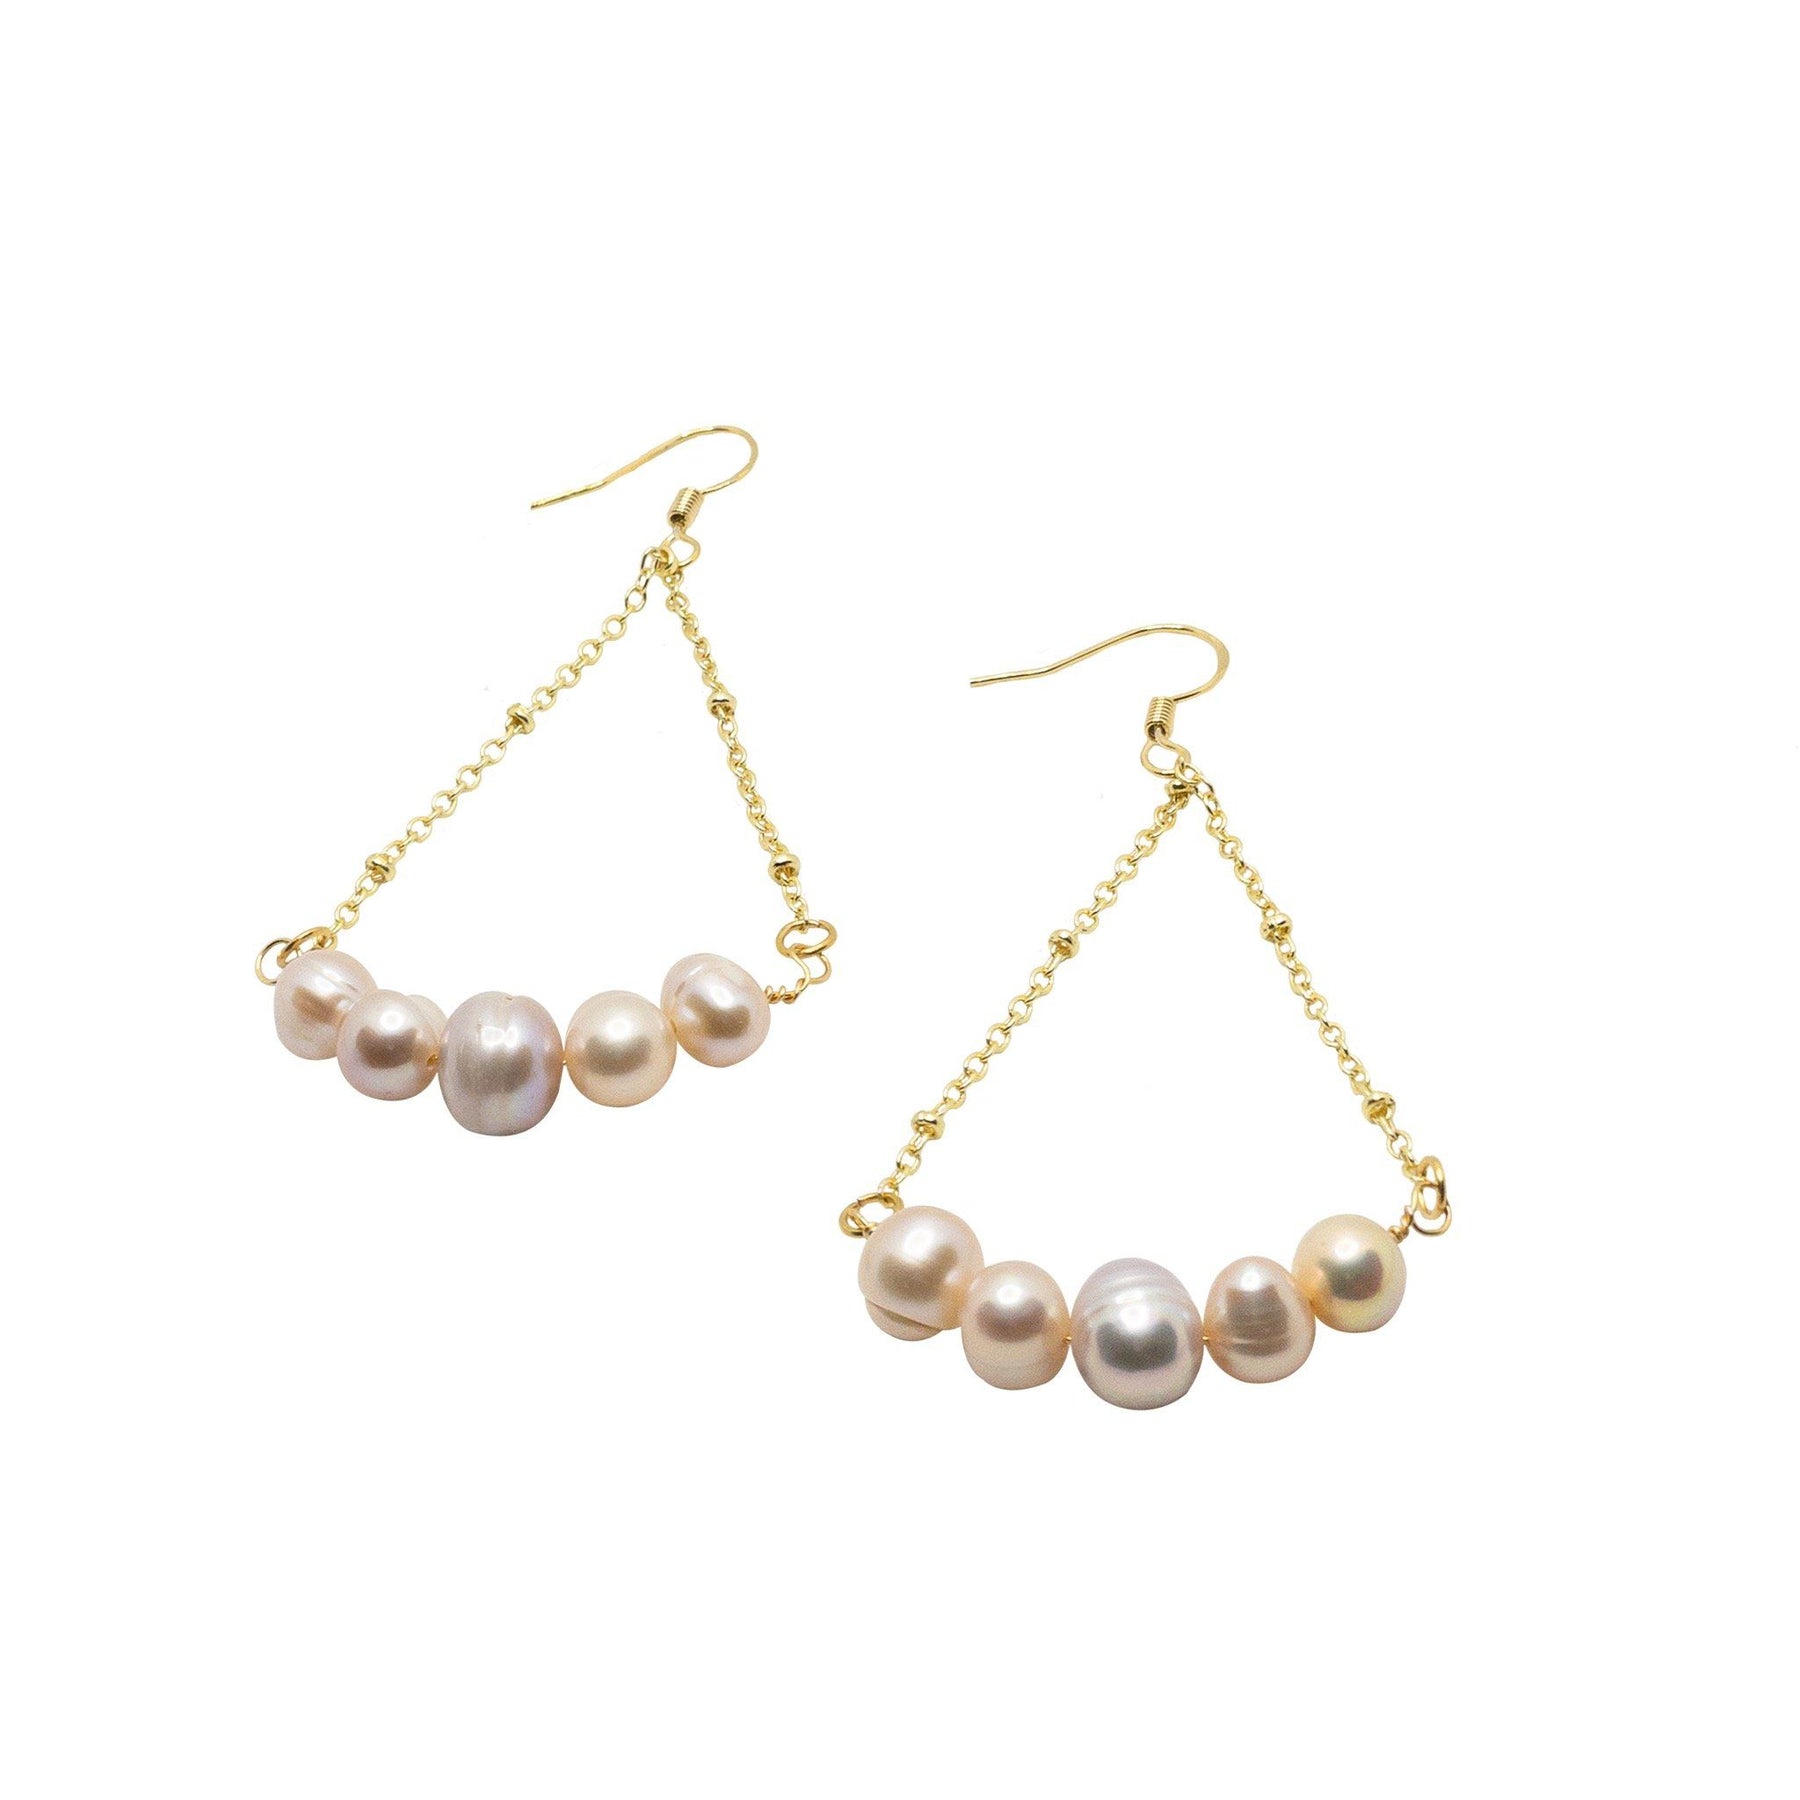 A pair of pink pearl earrings.